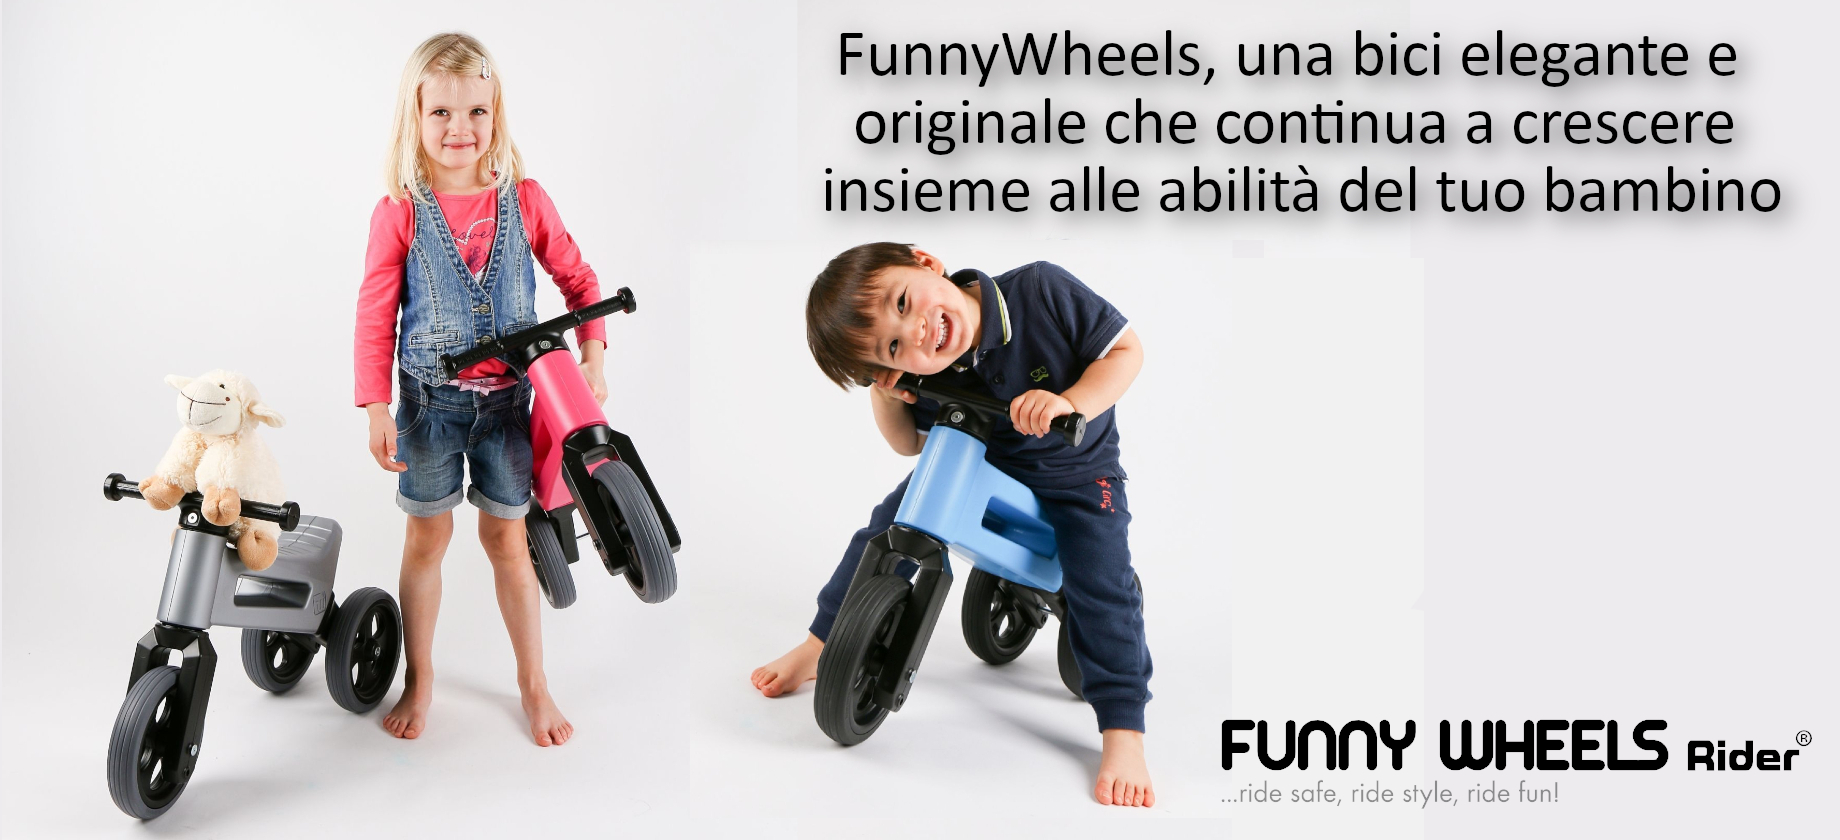 Funny Wheels: Vai al produttore | Giochi Giachi S.r.l. - Ingrosso e distribuzione di giochi e giocattoli